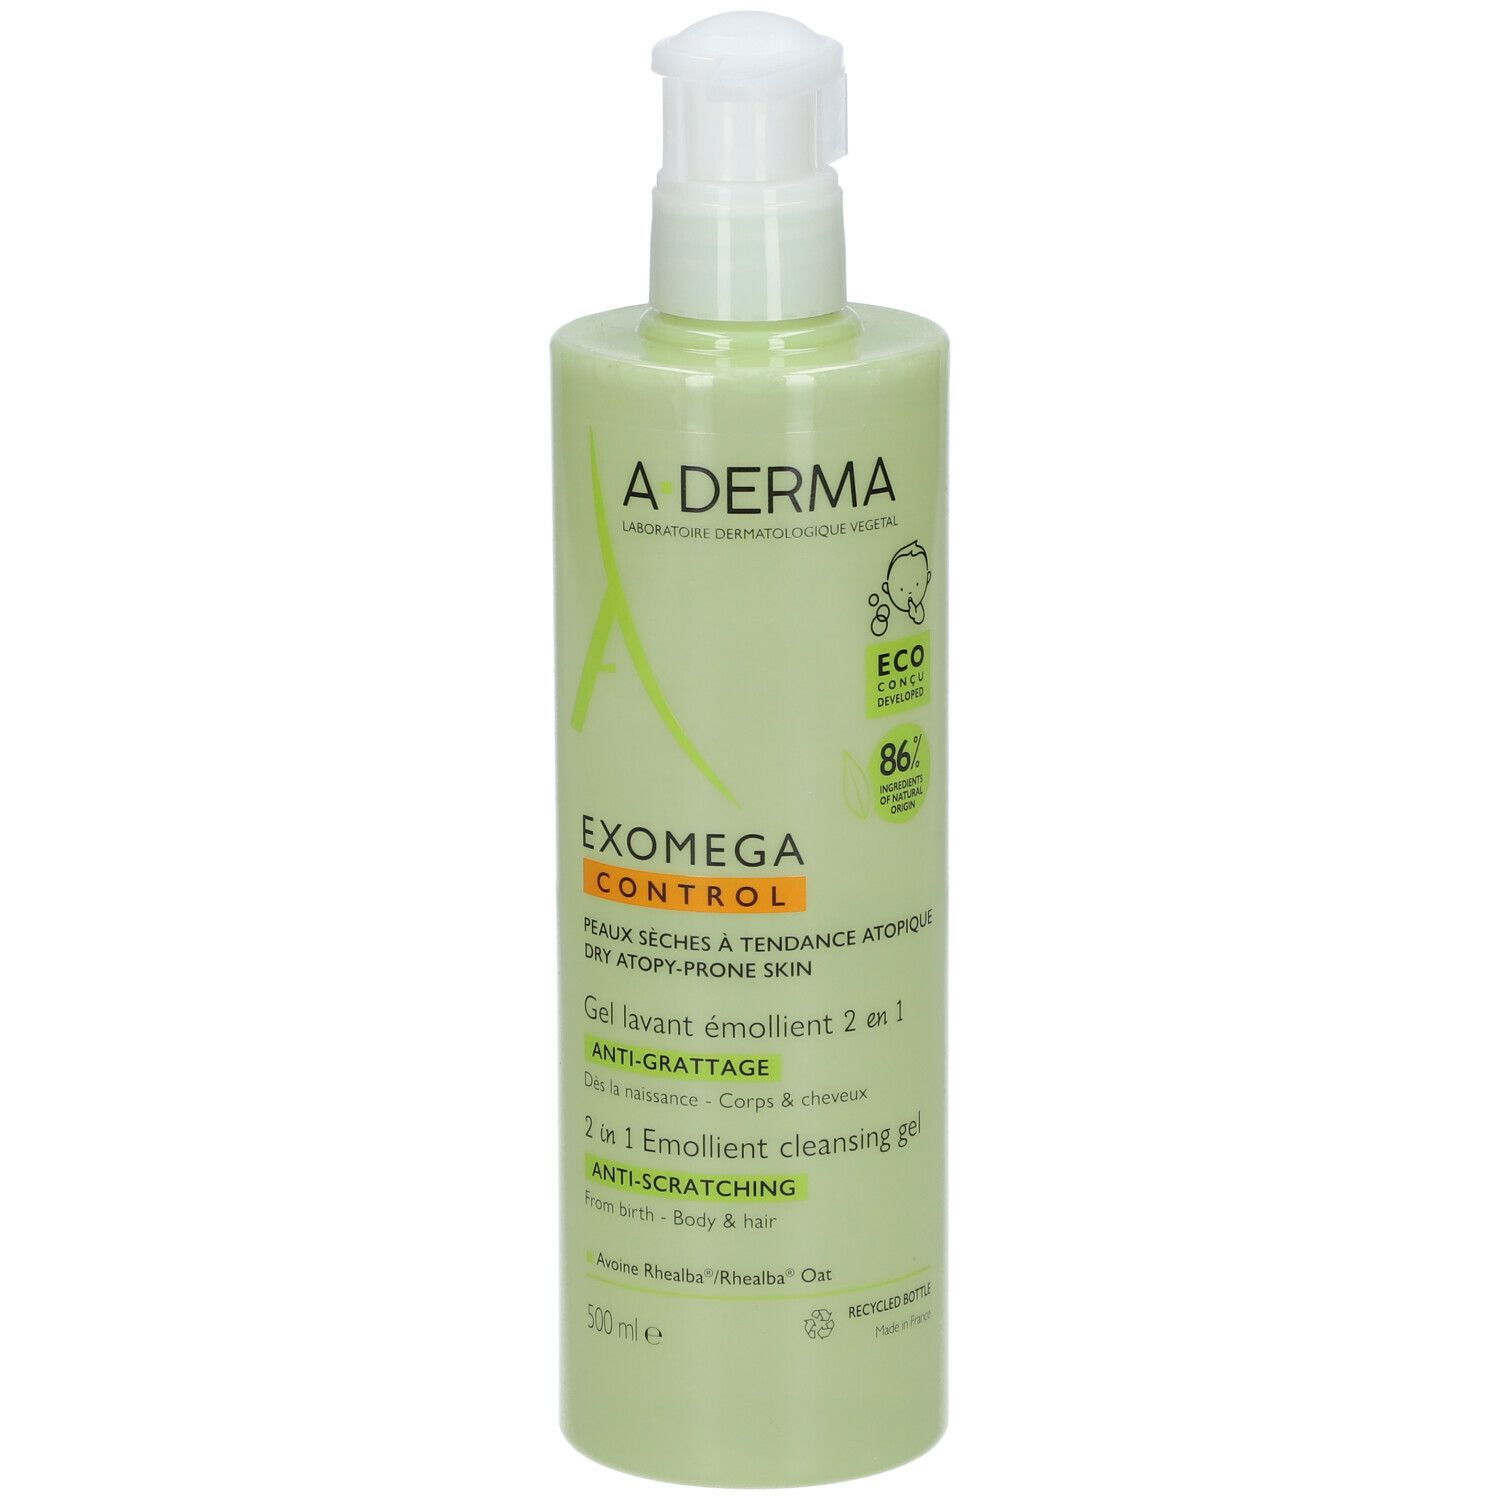 A-Derma Exomega Control Gel lavant émollient 2 en 1 anti-grattage